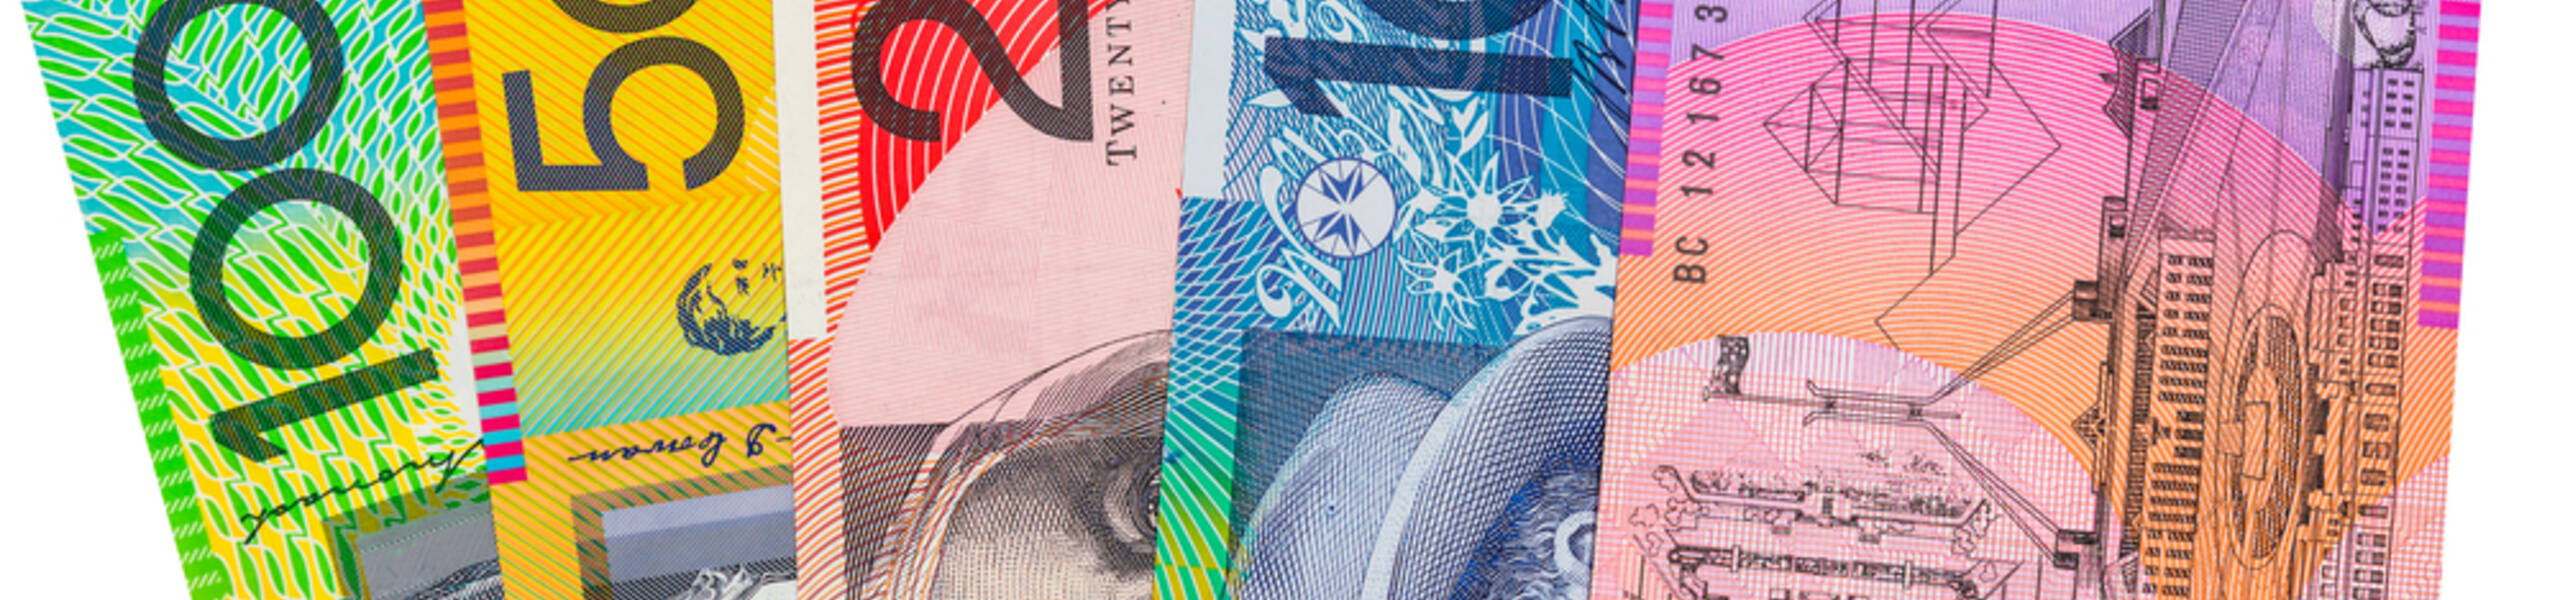 الدولار الأسترالي يحافظ على متوسط 50 يوم